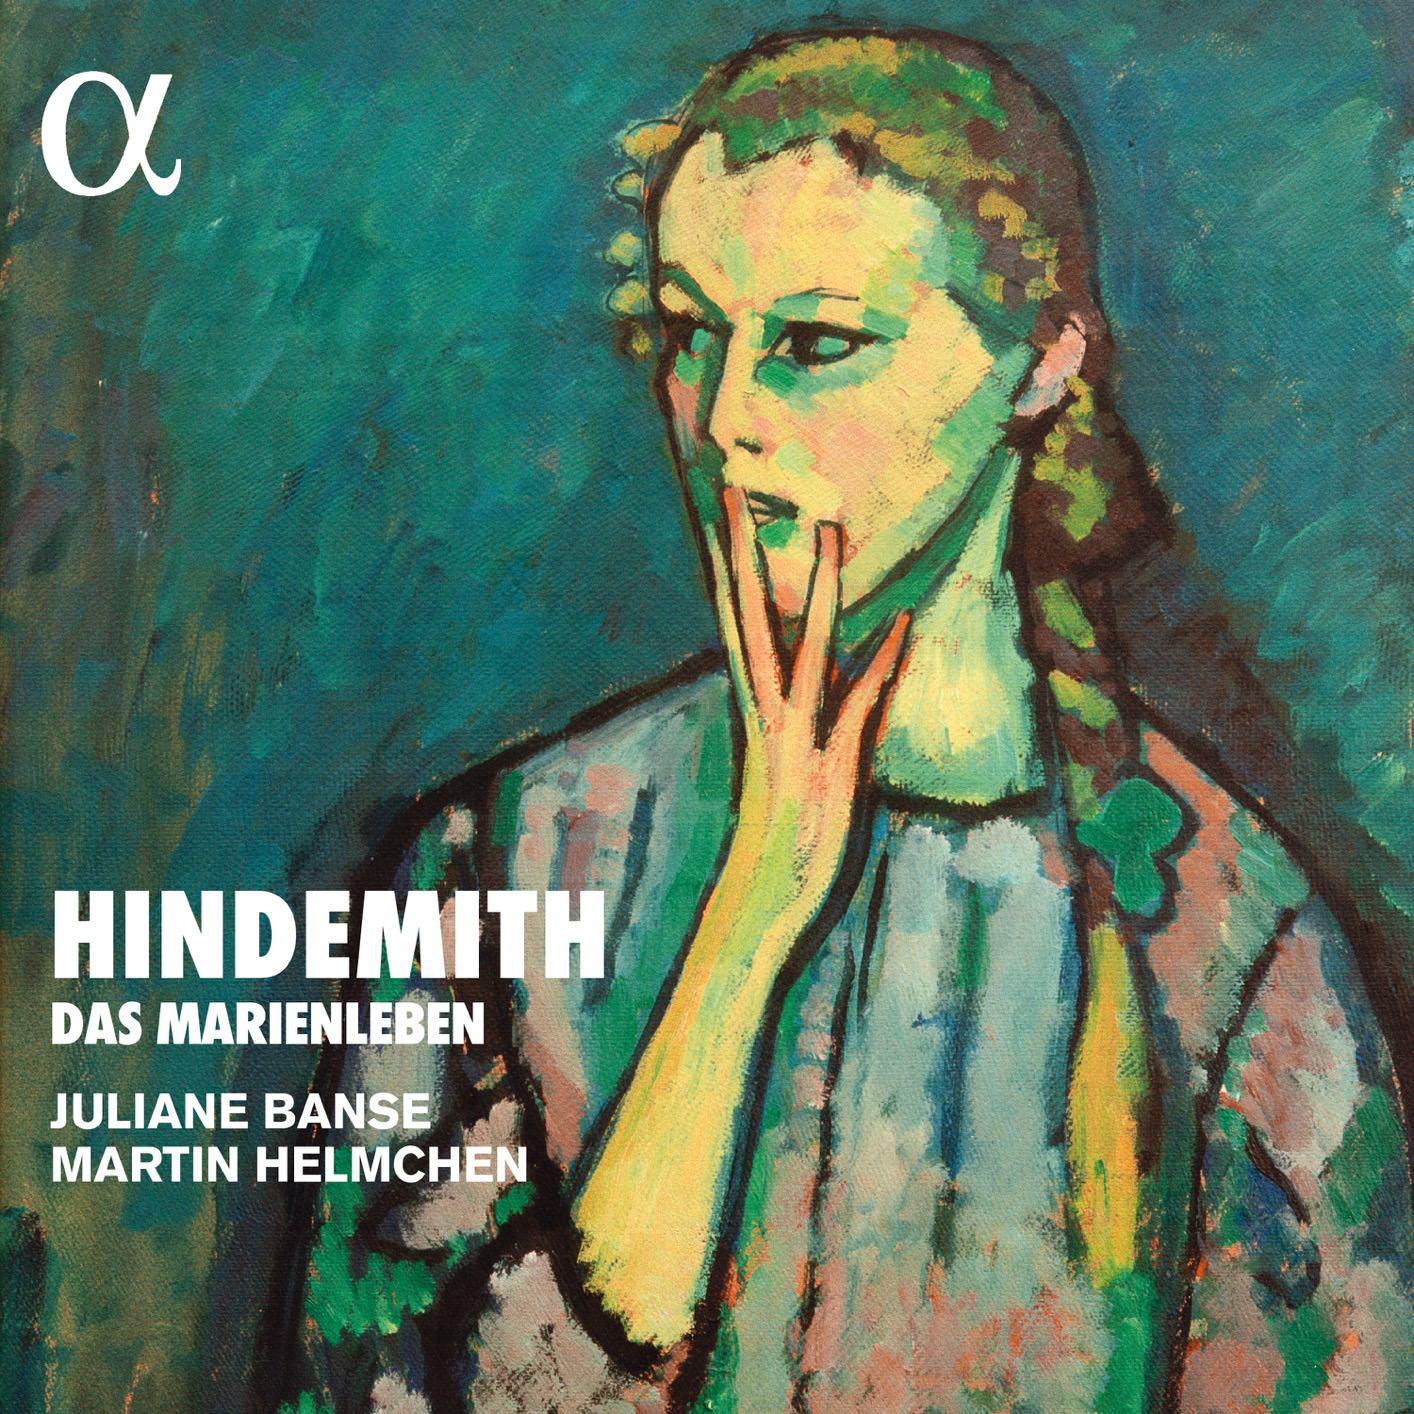 Juliane Banse & Martin Helmchen – Hindemith: Das Marienleben, Op. 27 (2018) [FLAC 24bit/96kHz]